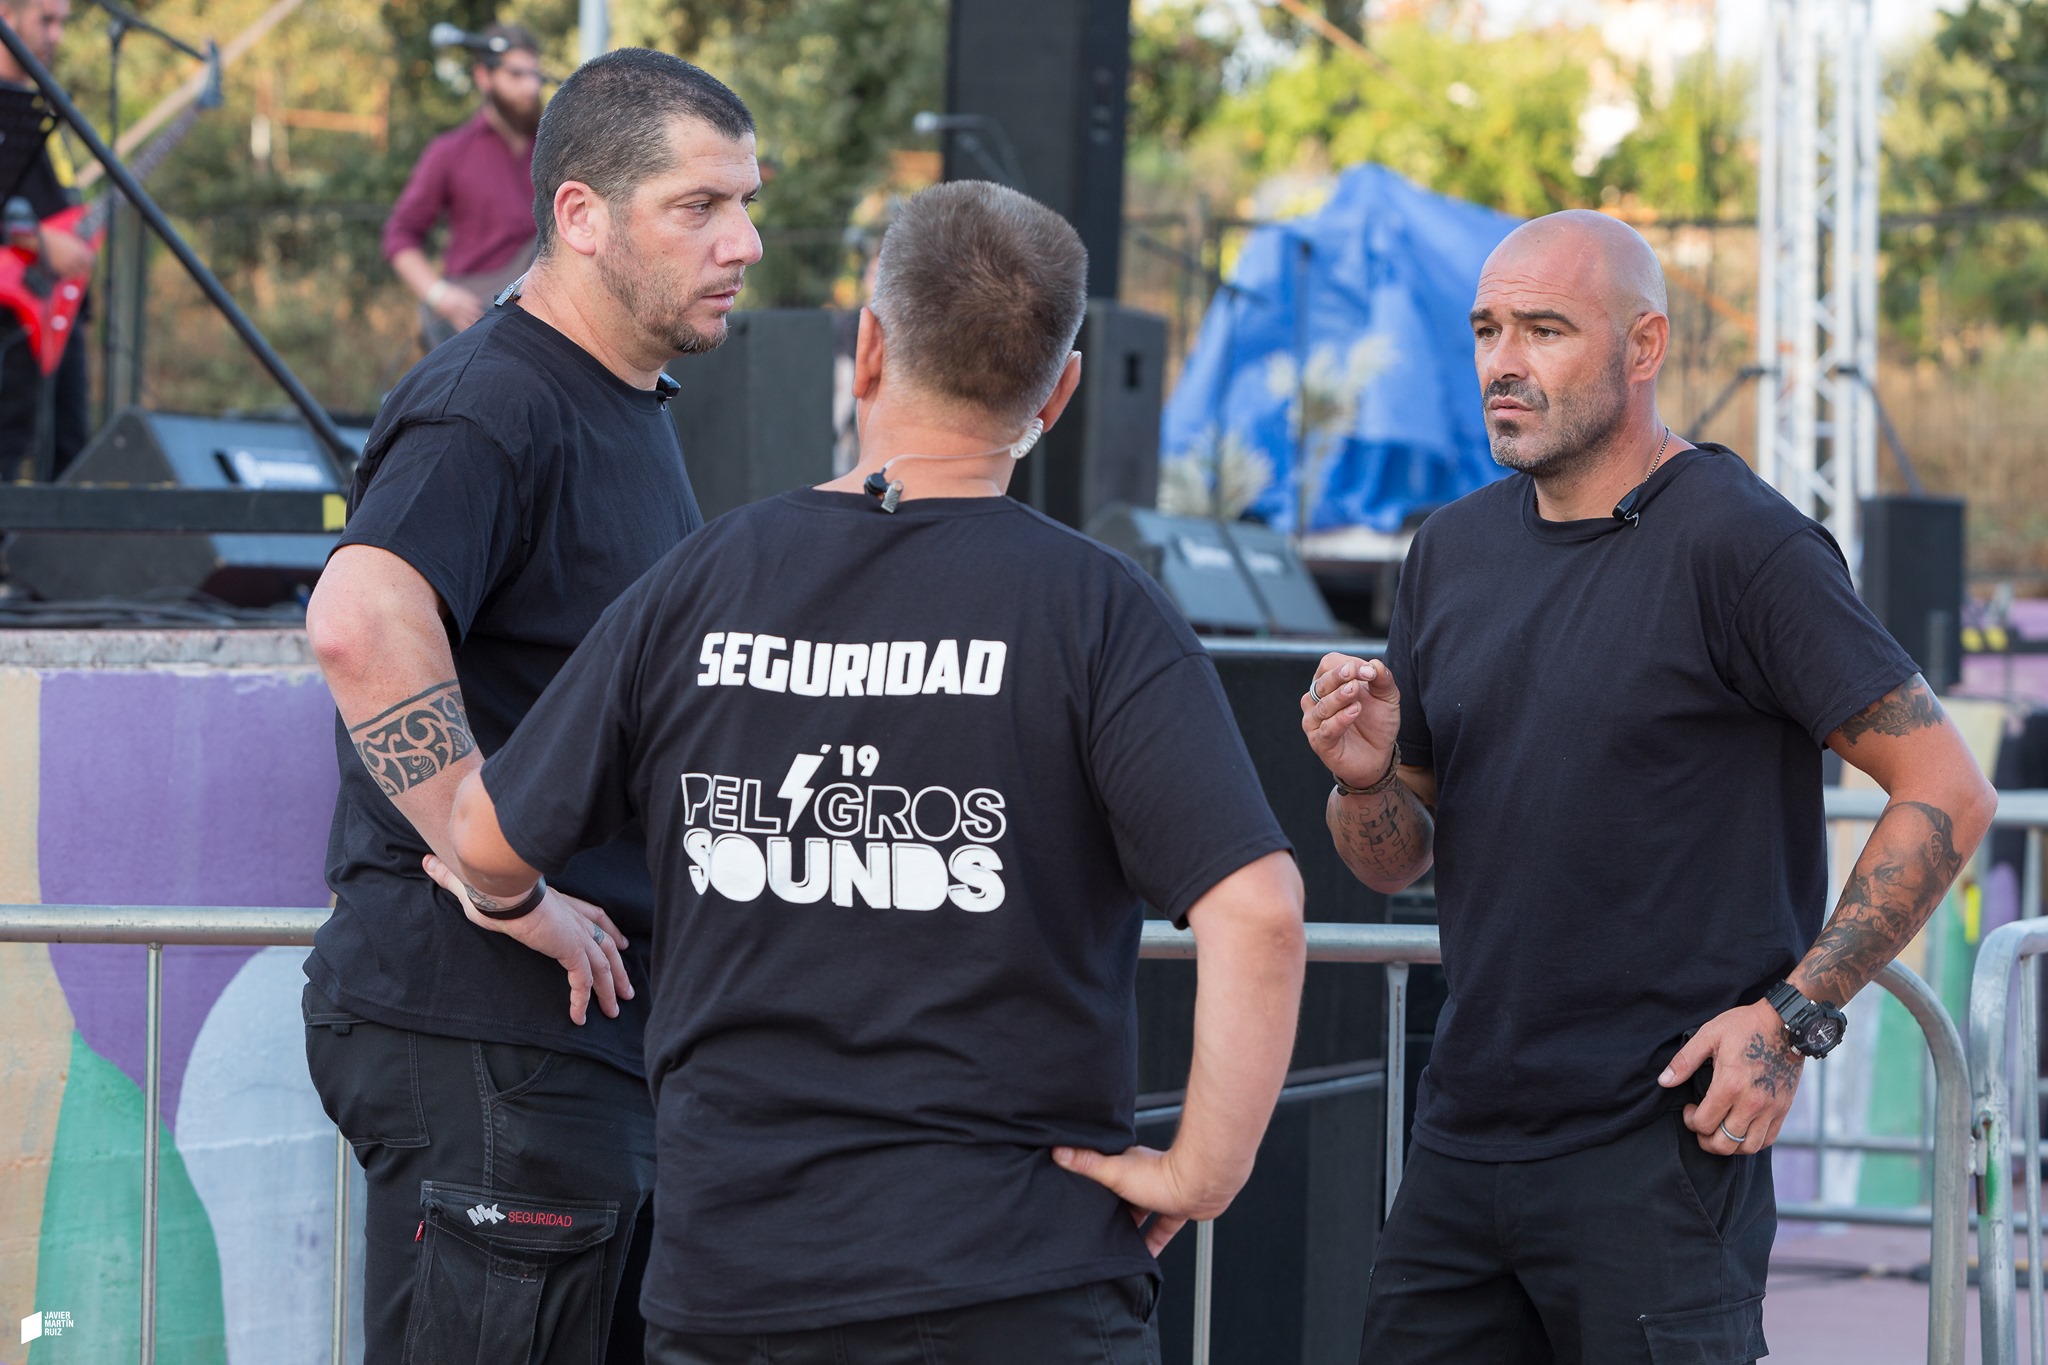 2019- Seguridad en el festival peligros sounds